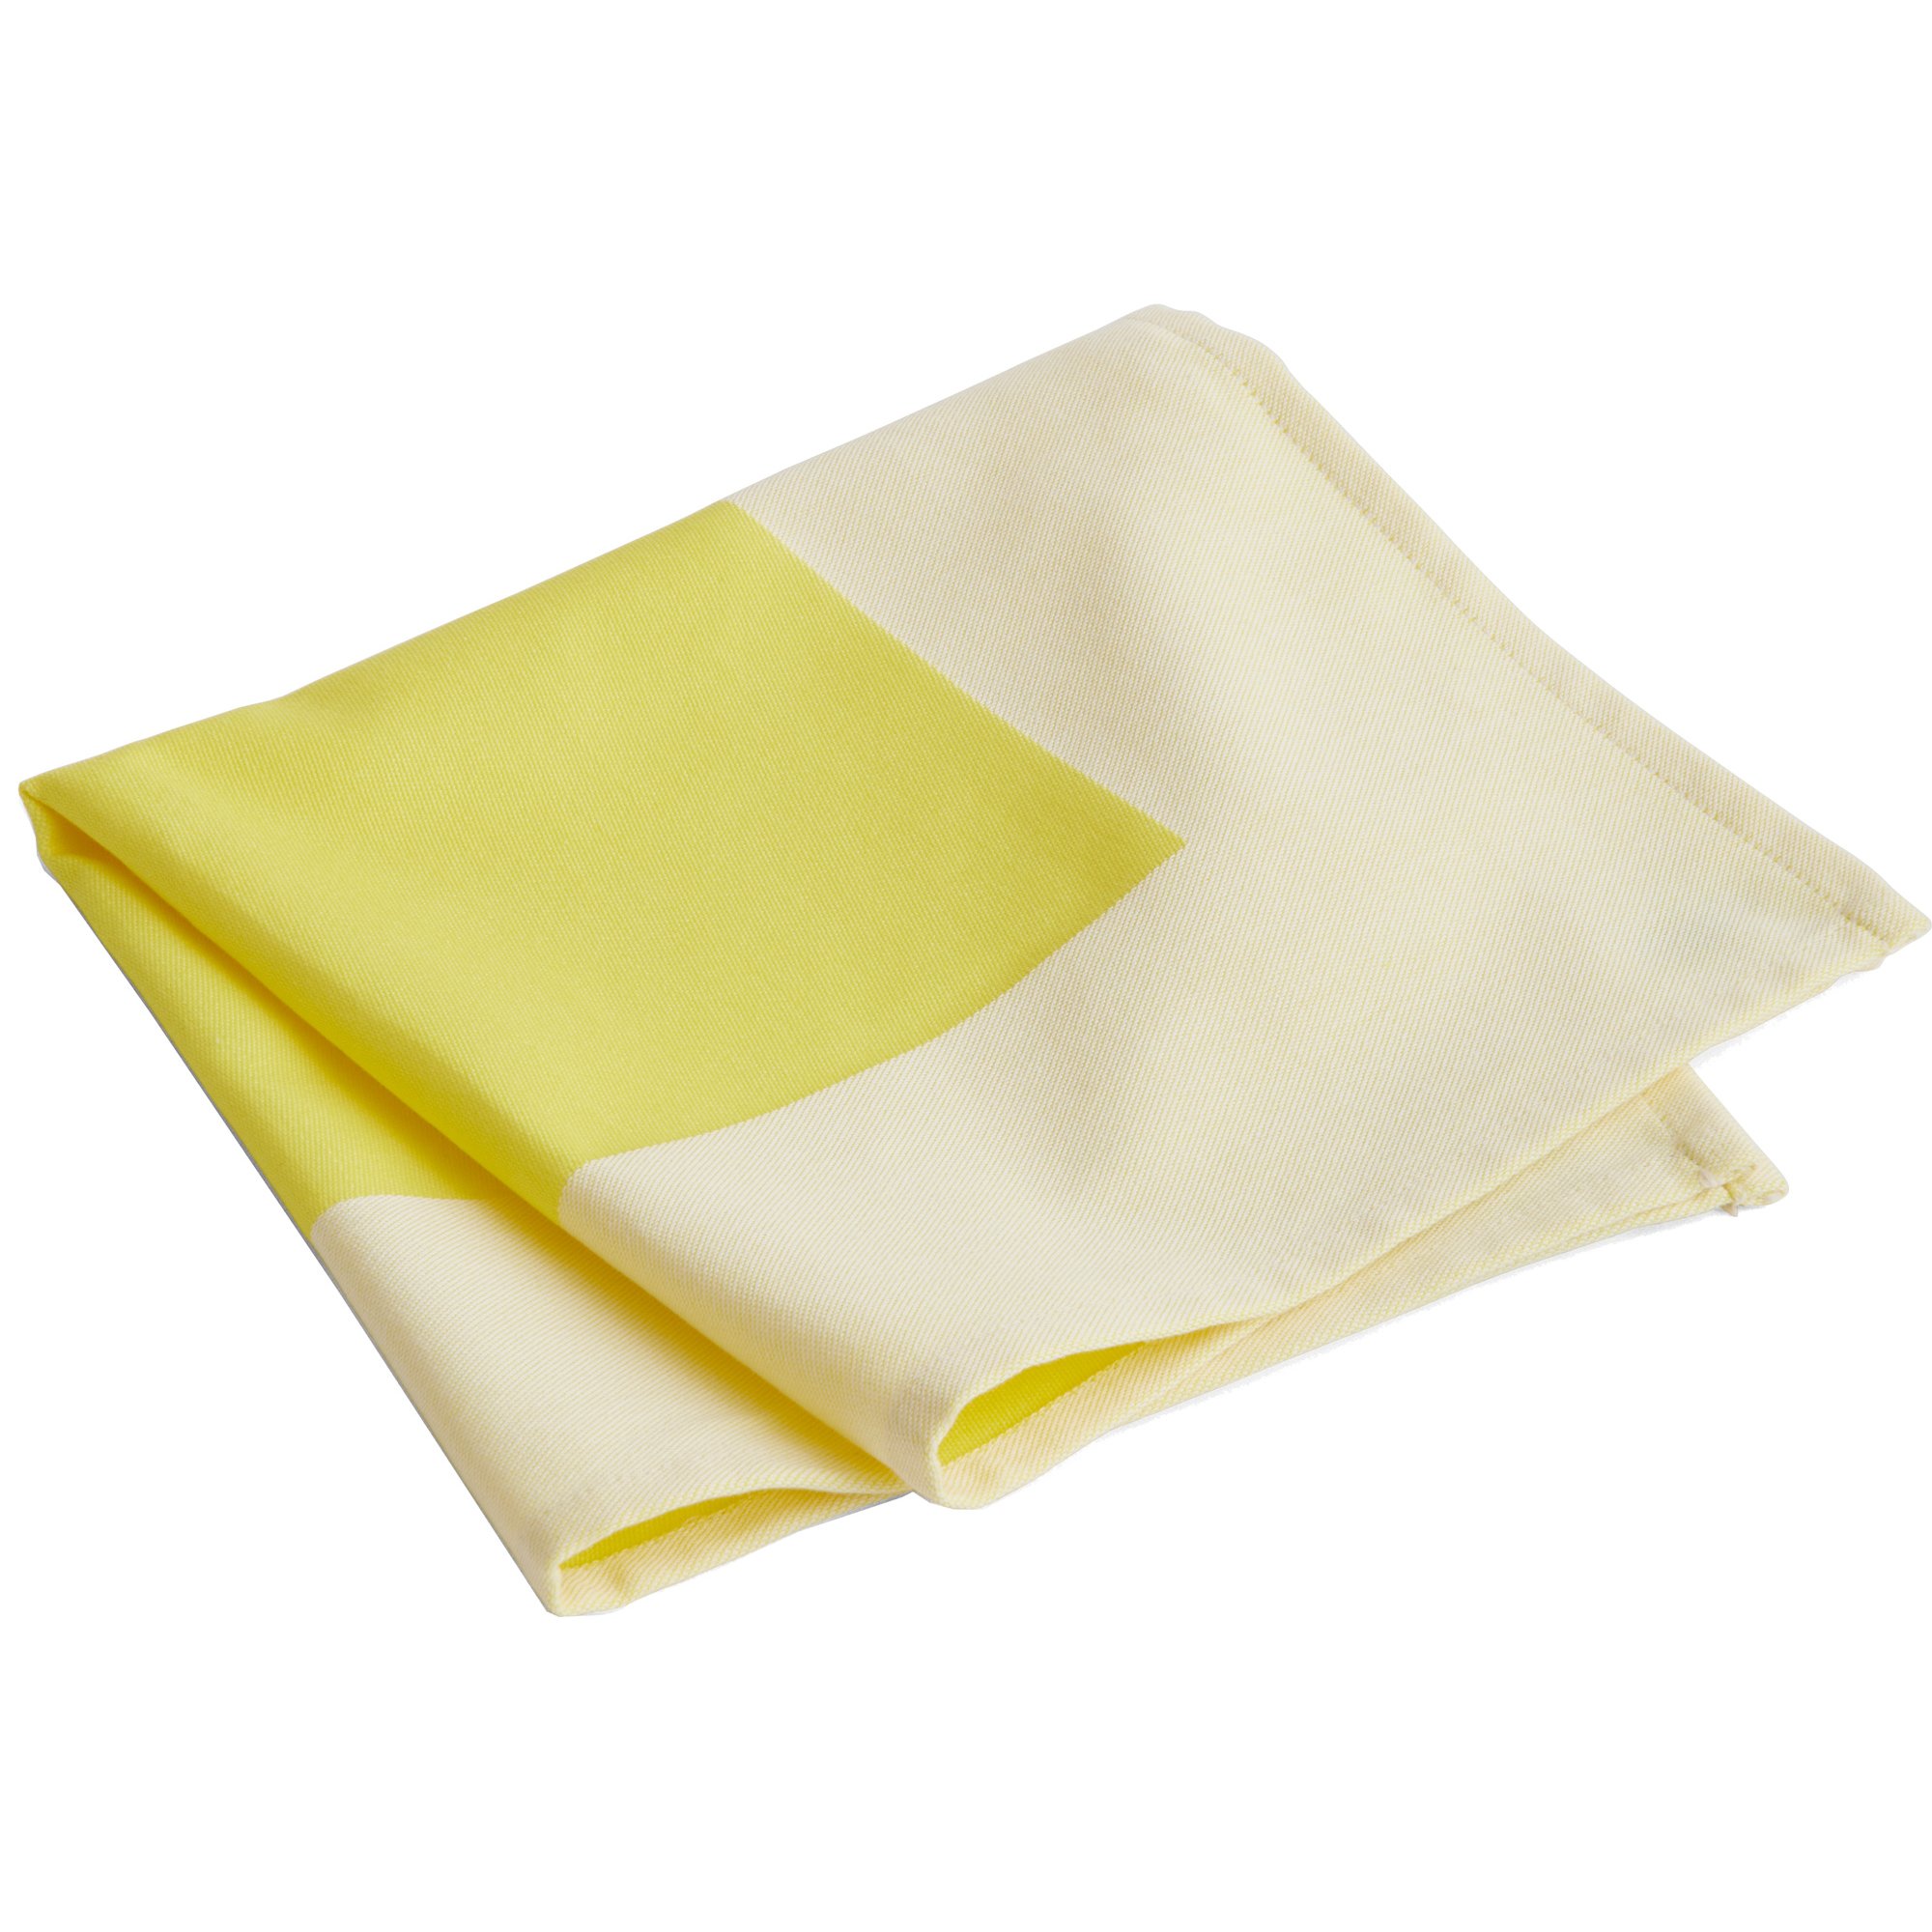 10: HAY Ram serviet, gul